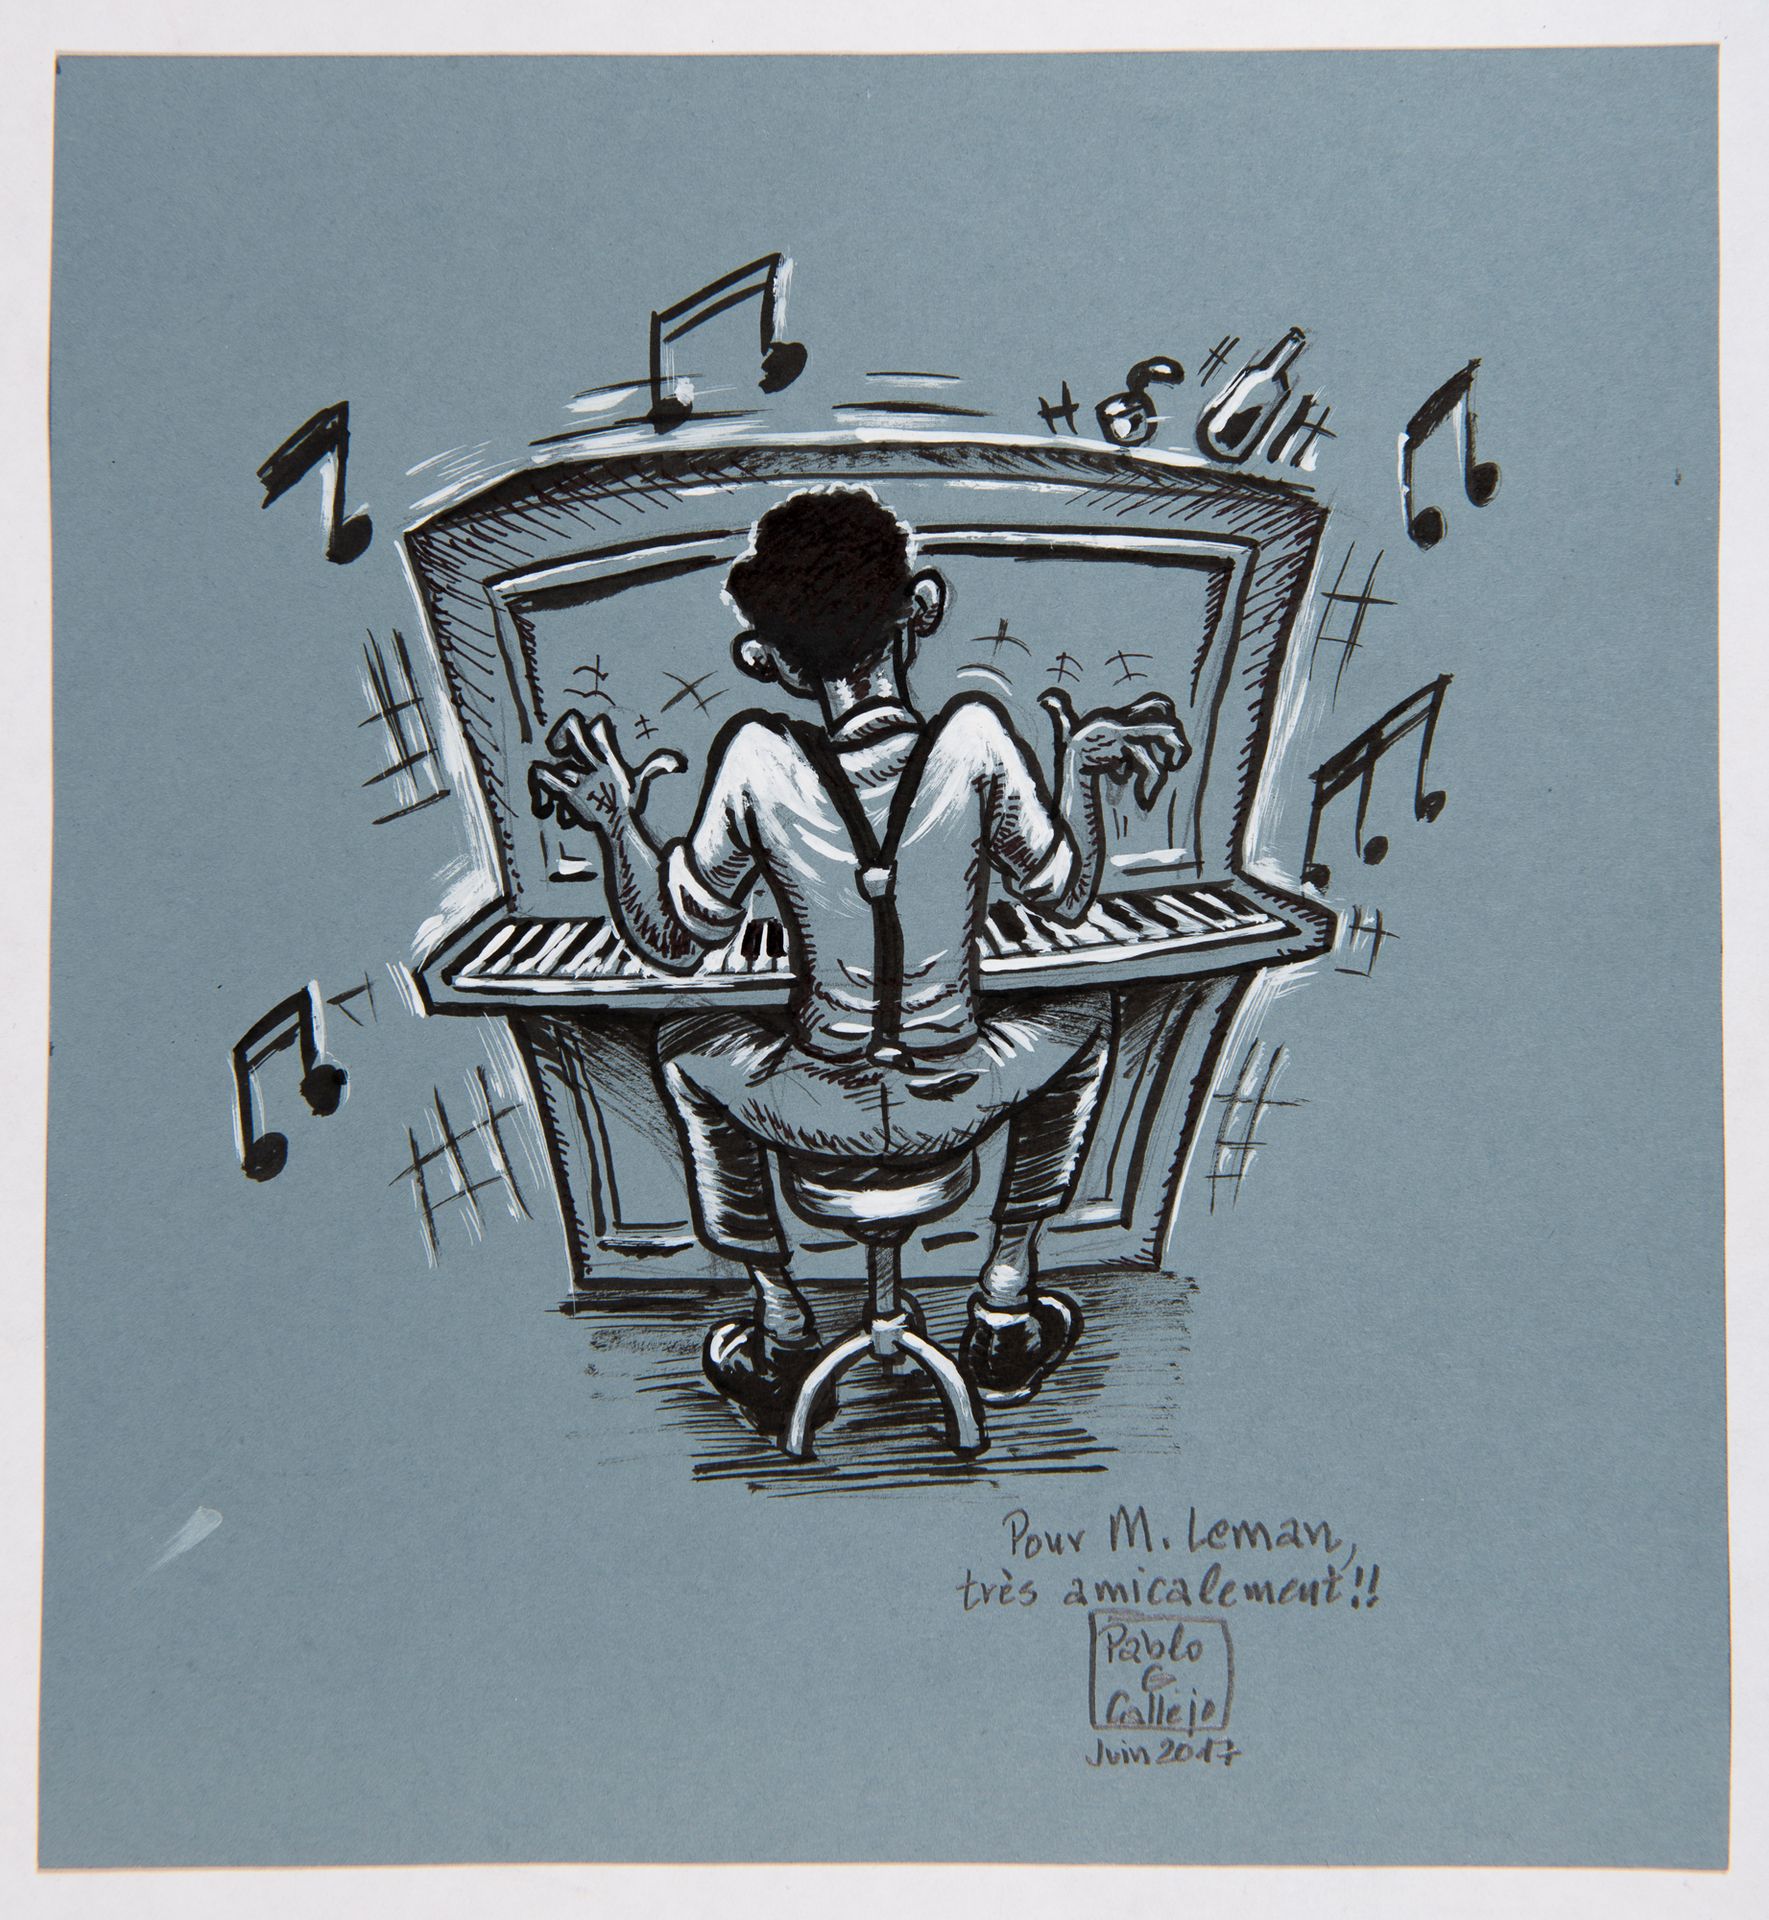 Garcia-Callejo Originalzeichnung: Wunderschöne Zeichnung, die einen Pianisten da&hellip;